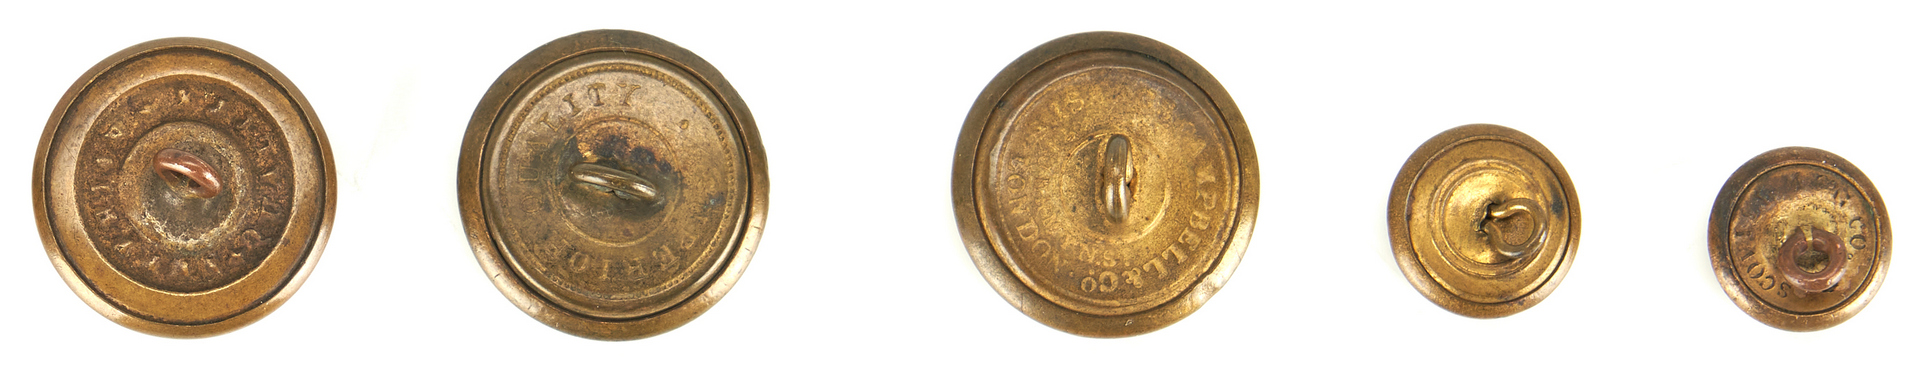 Lot 382: Group of 13 Civil War & Revolutionary War Items, incl. Buttons